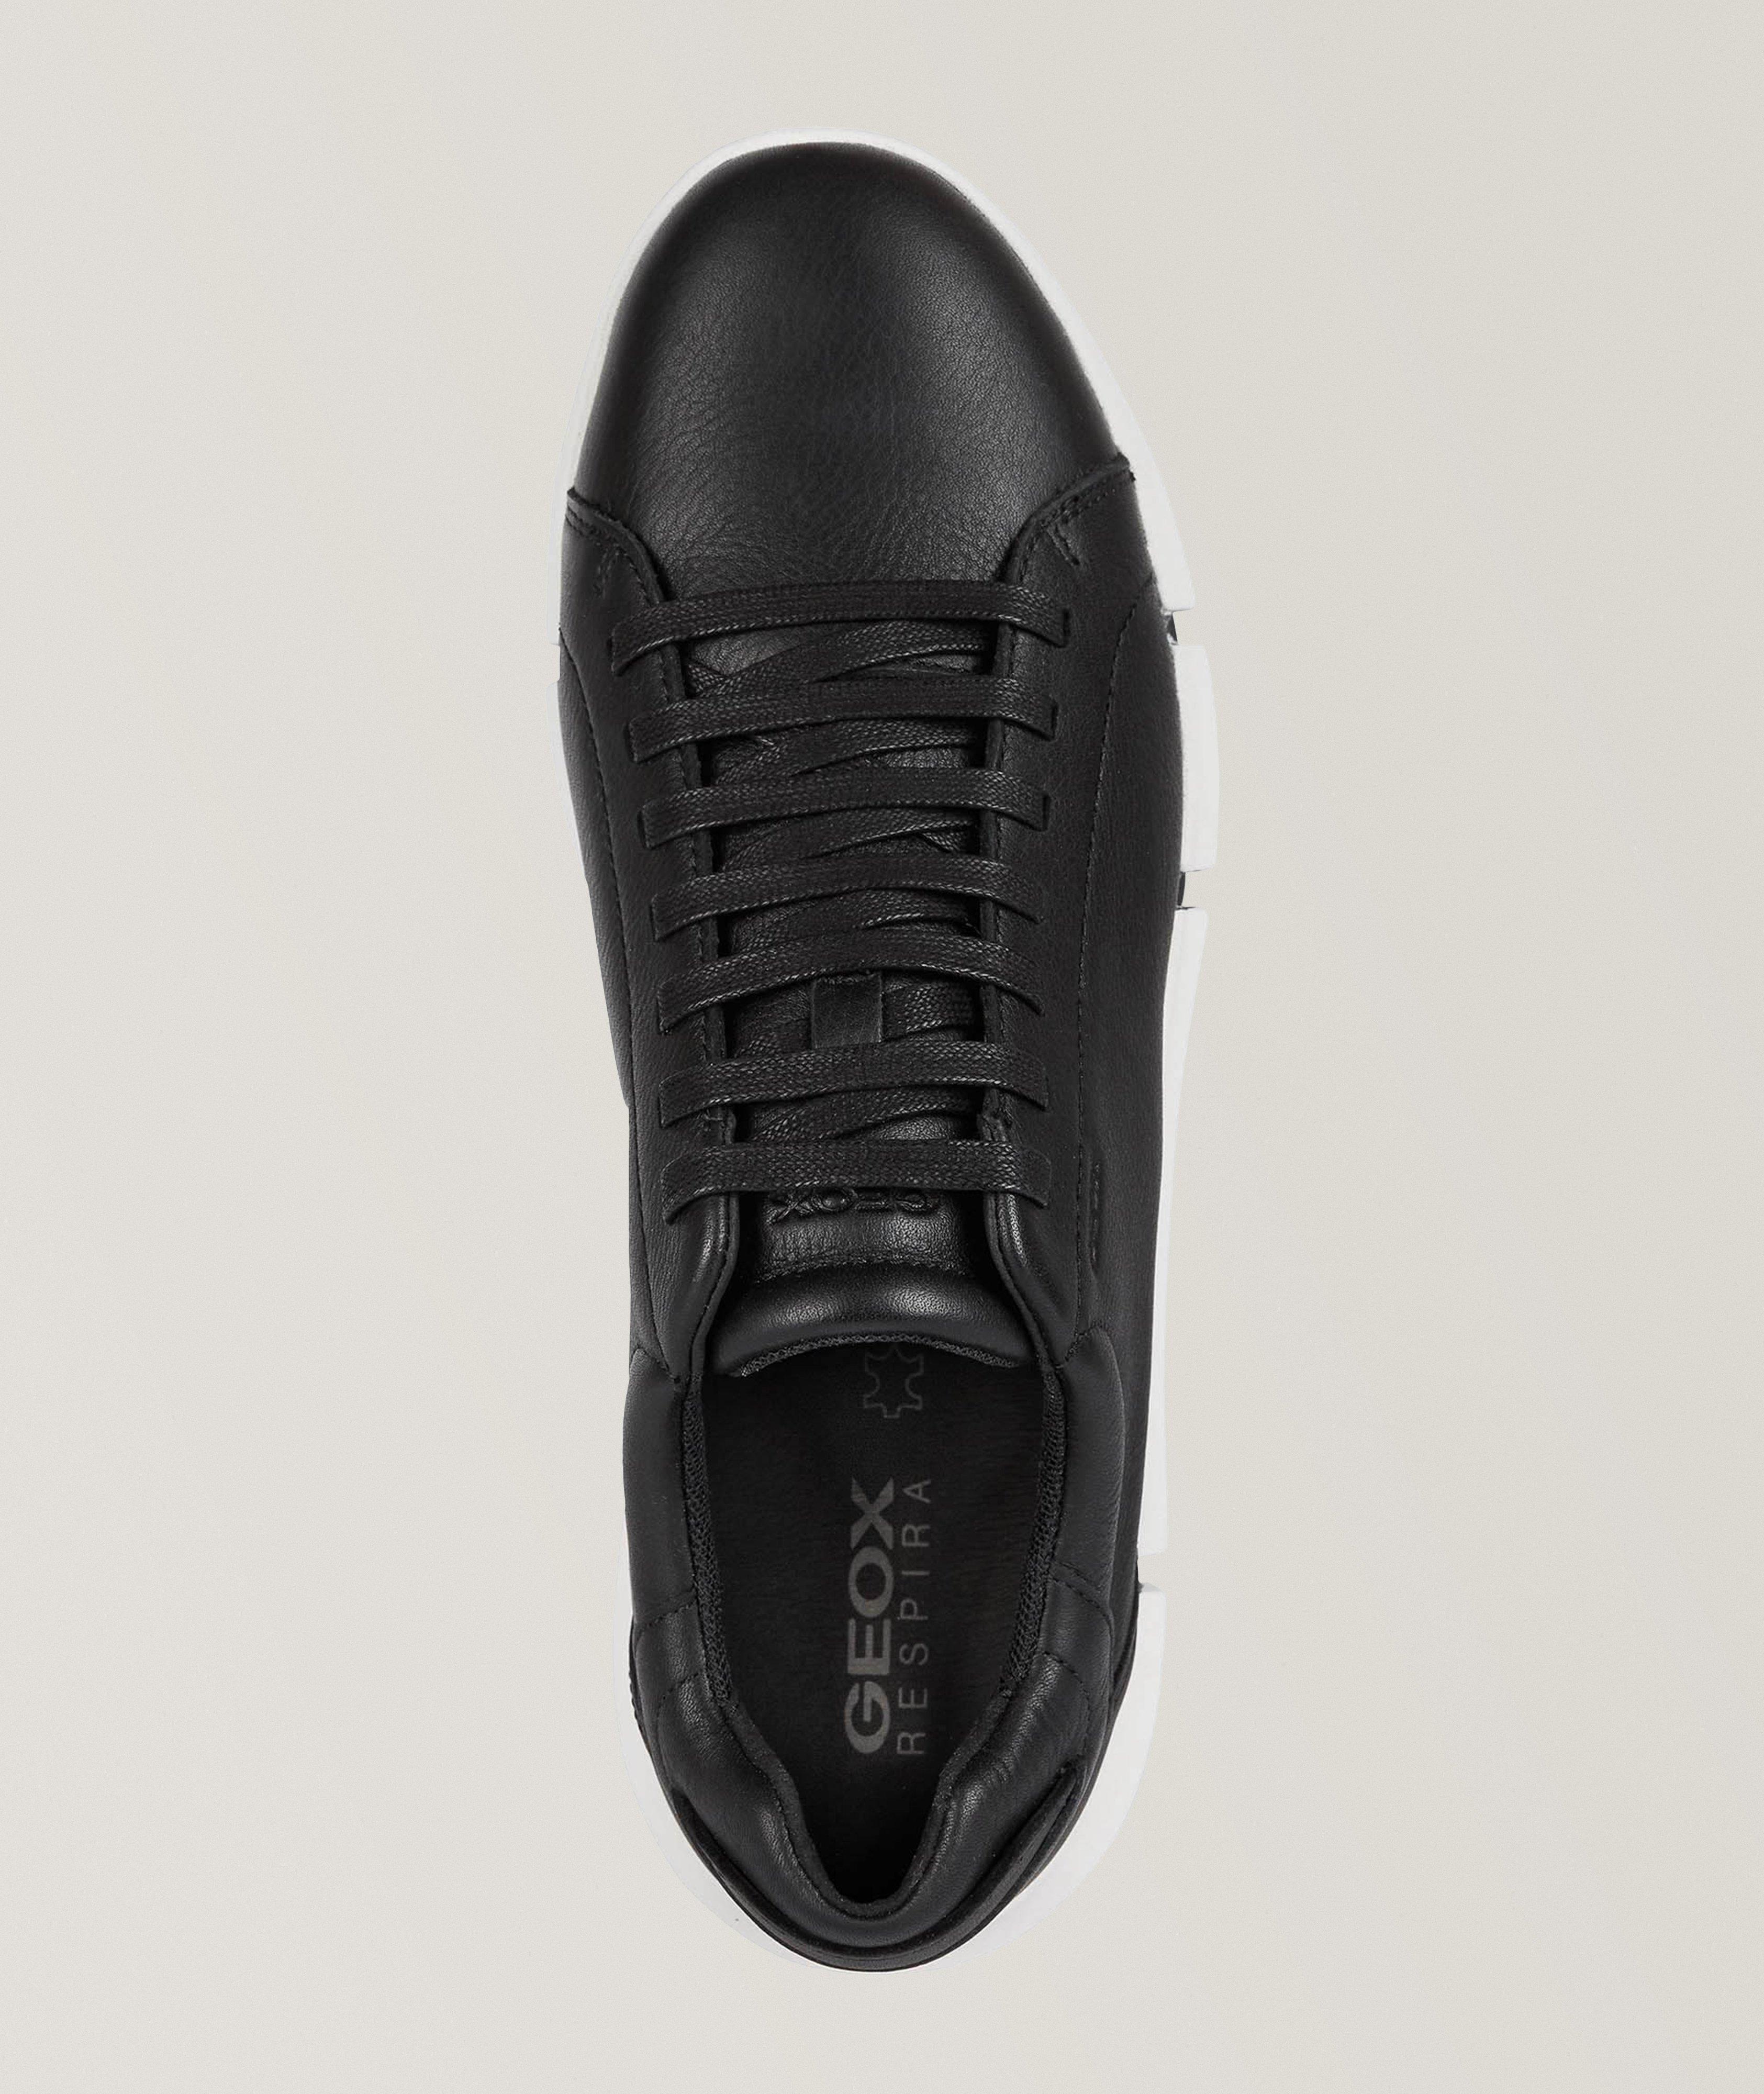 Chaussure sport Adacter 2 en cuir image 4